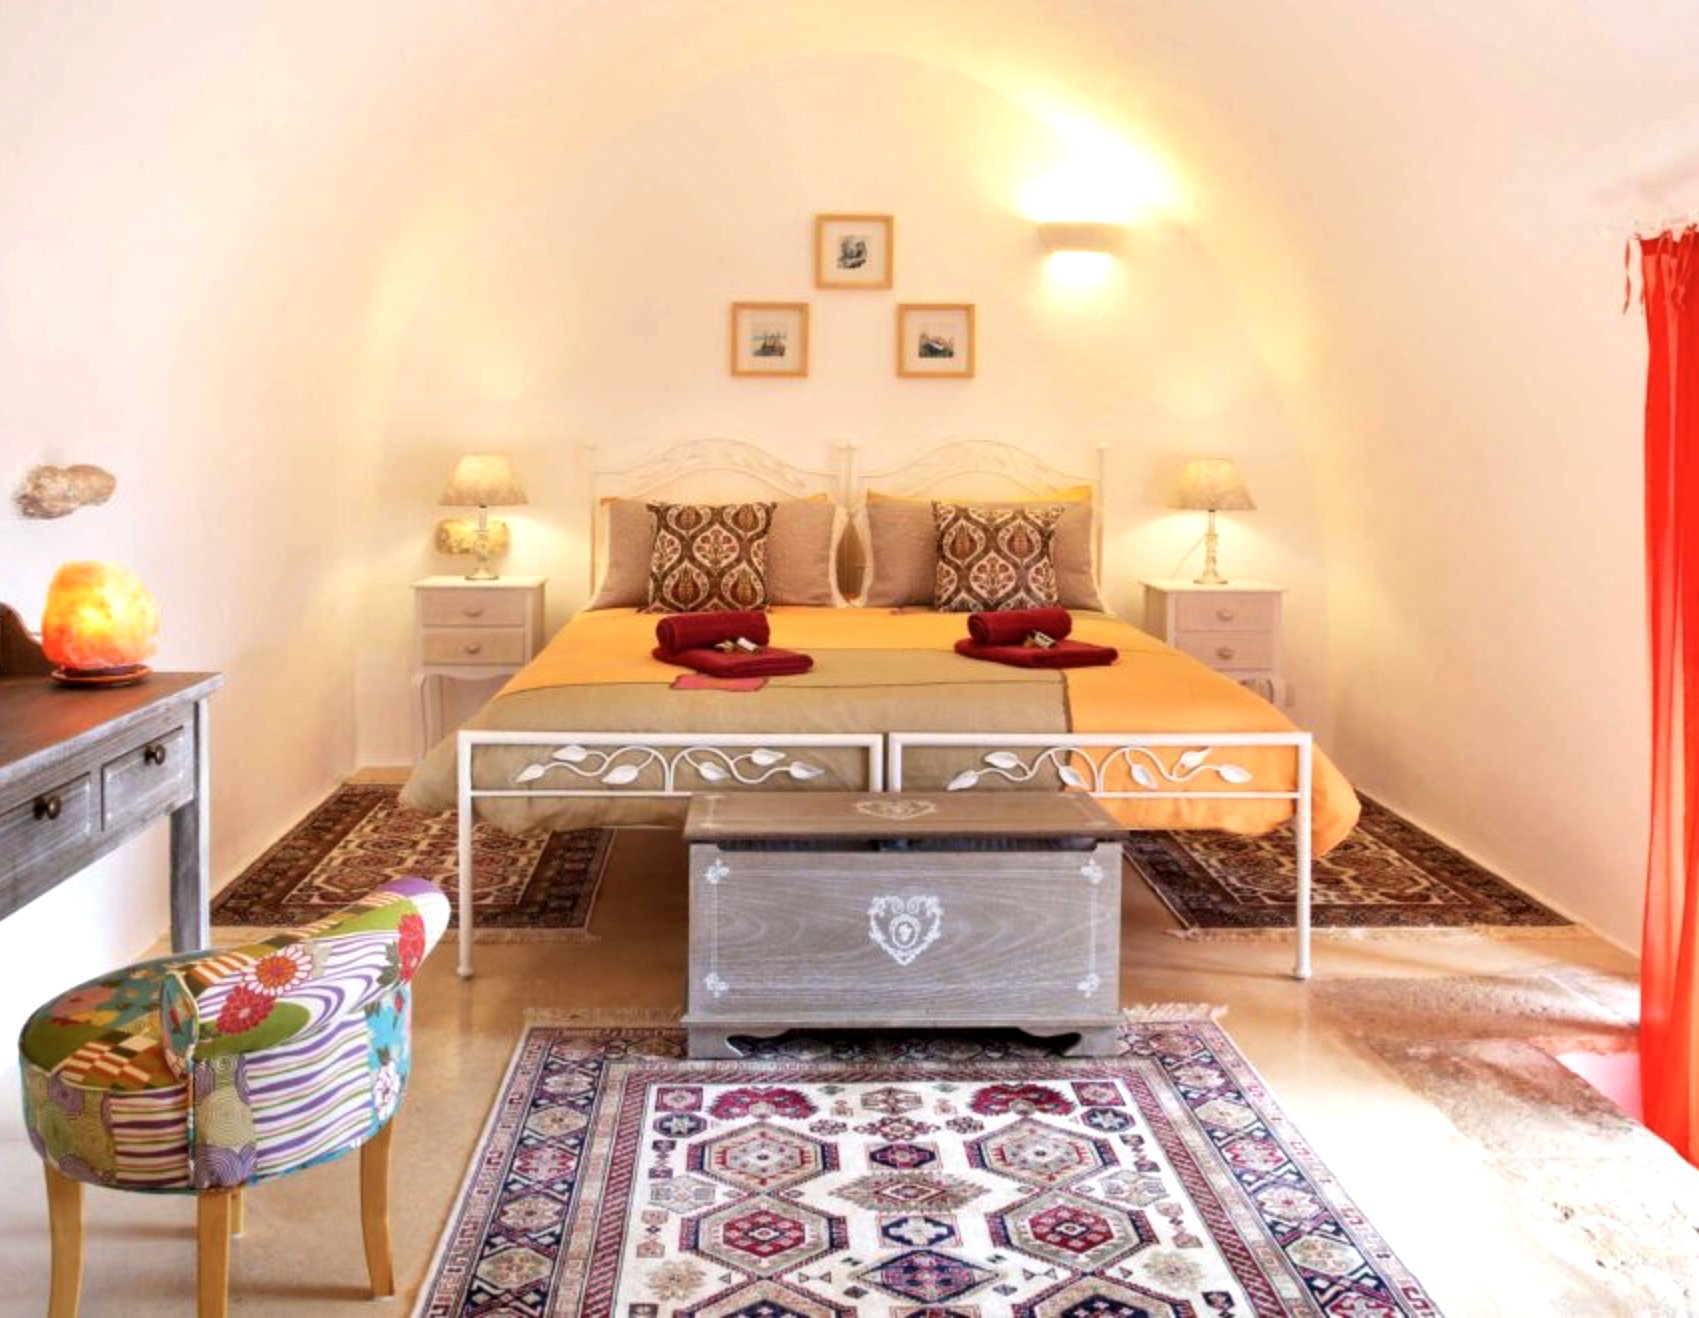 YOAS Puglia bedroom.jpg